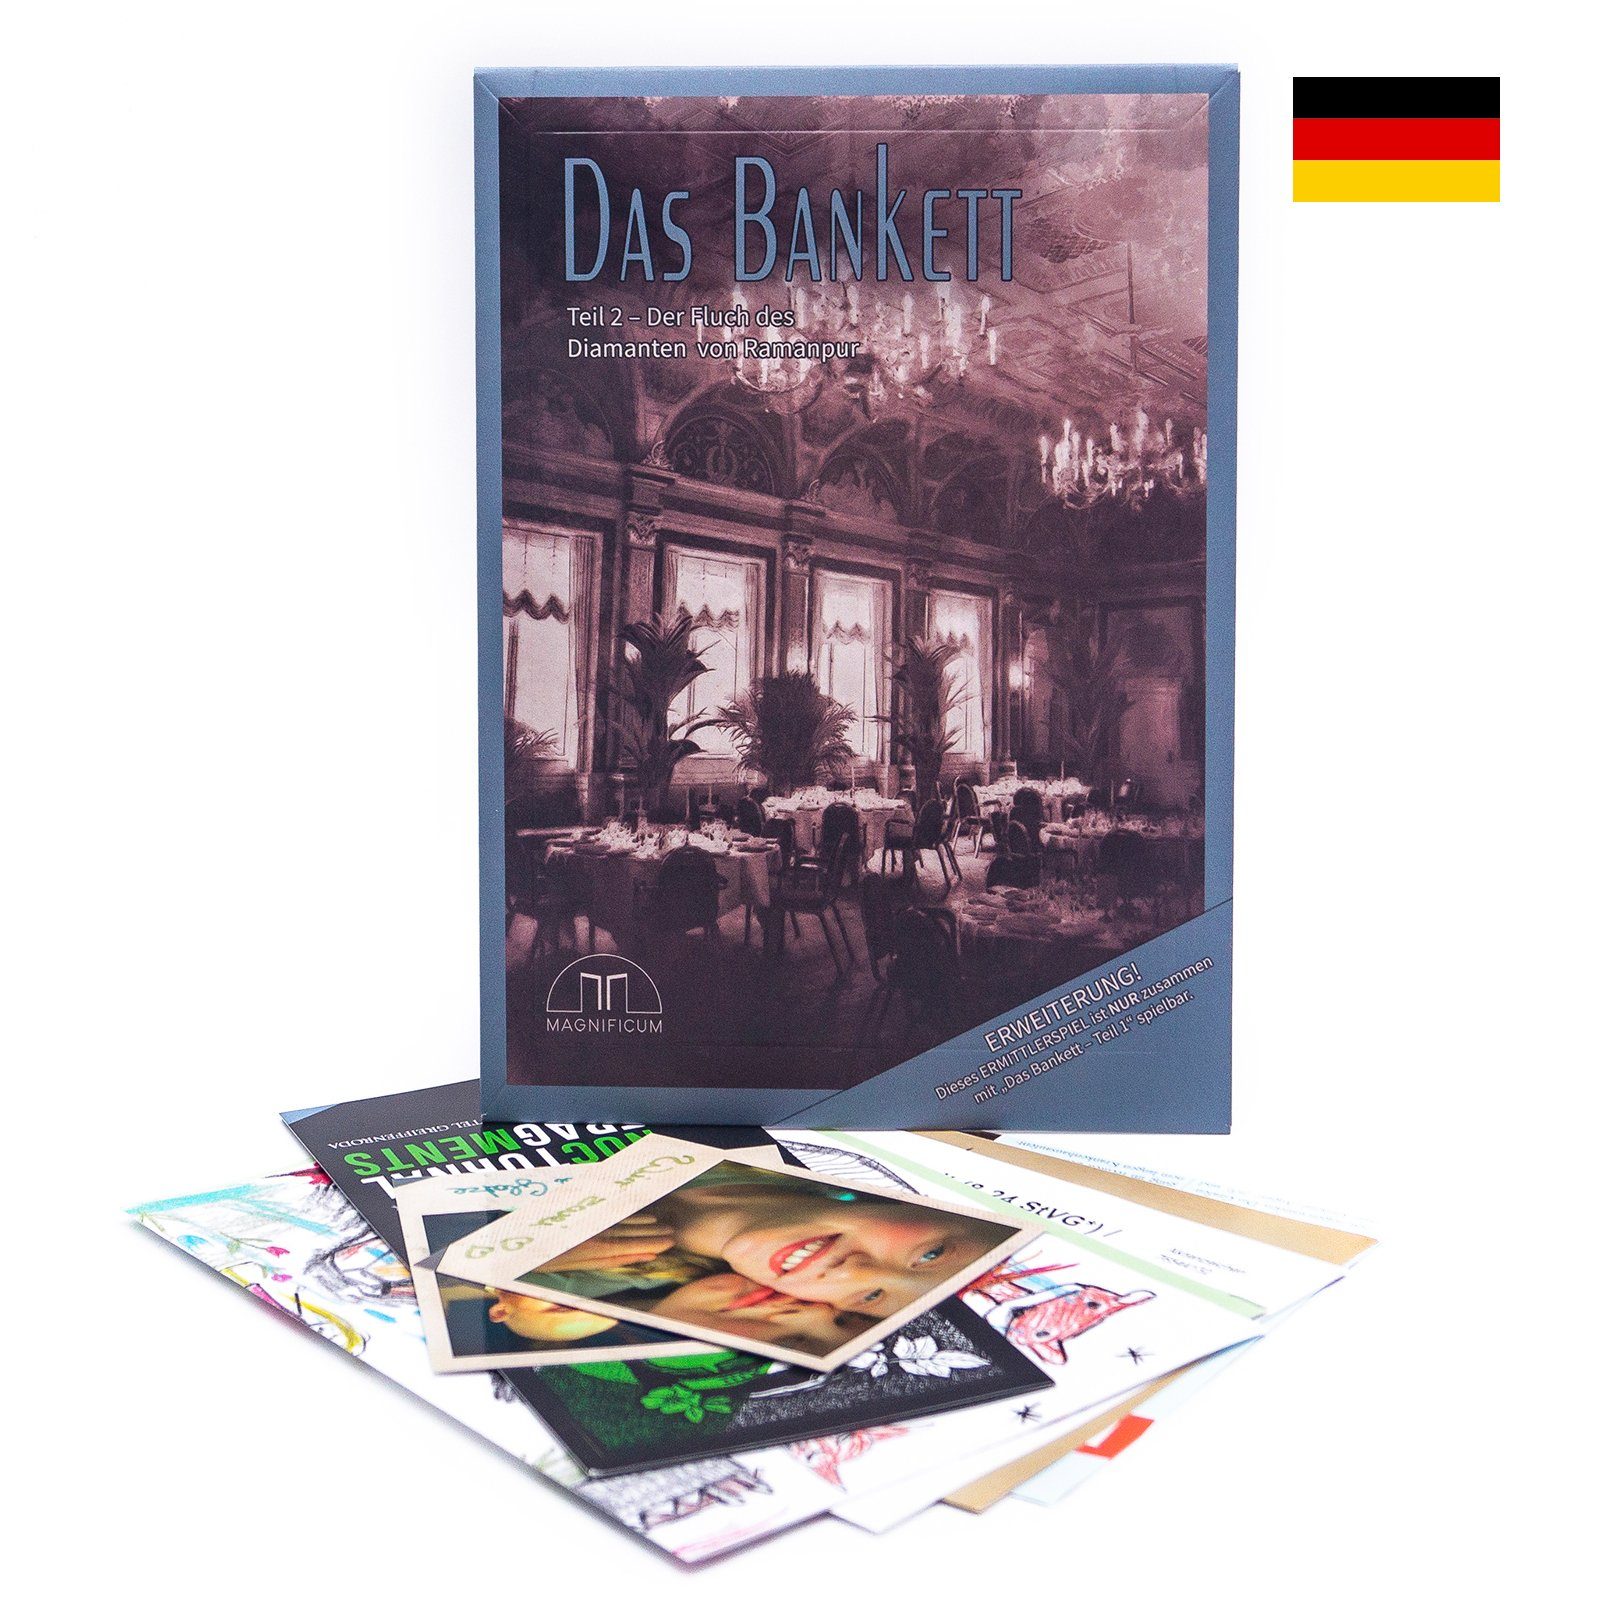 Der Teil - 2 des für von Germany in - Spiel, Krimispiel Das / Ramanpur Erwachsene, MAGNIFICUM Bankett Diamanten Detektivspiel Fluch Made